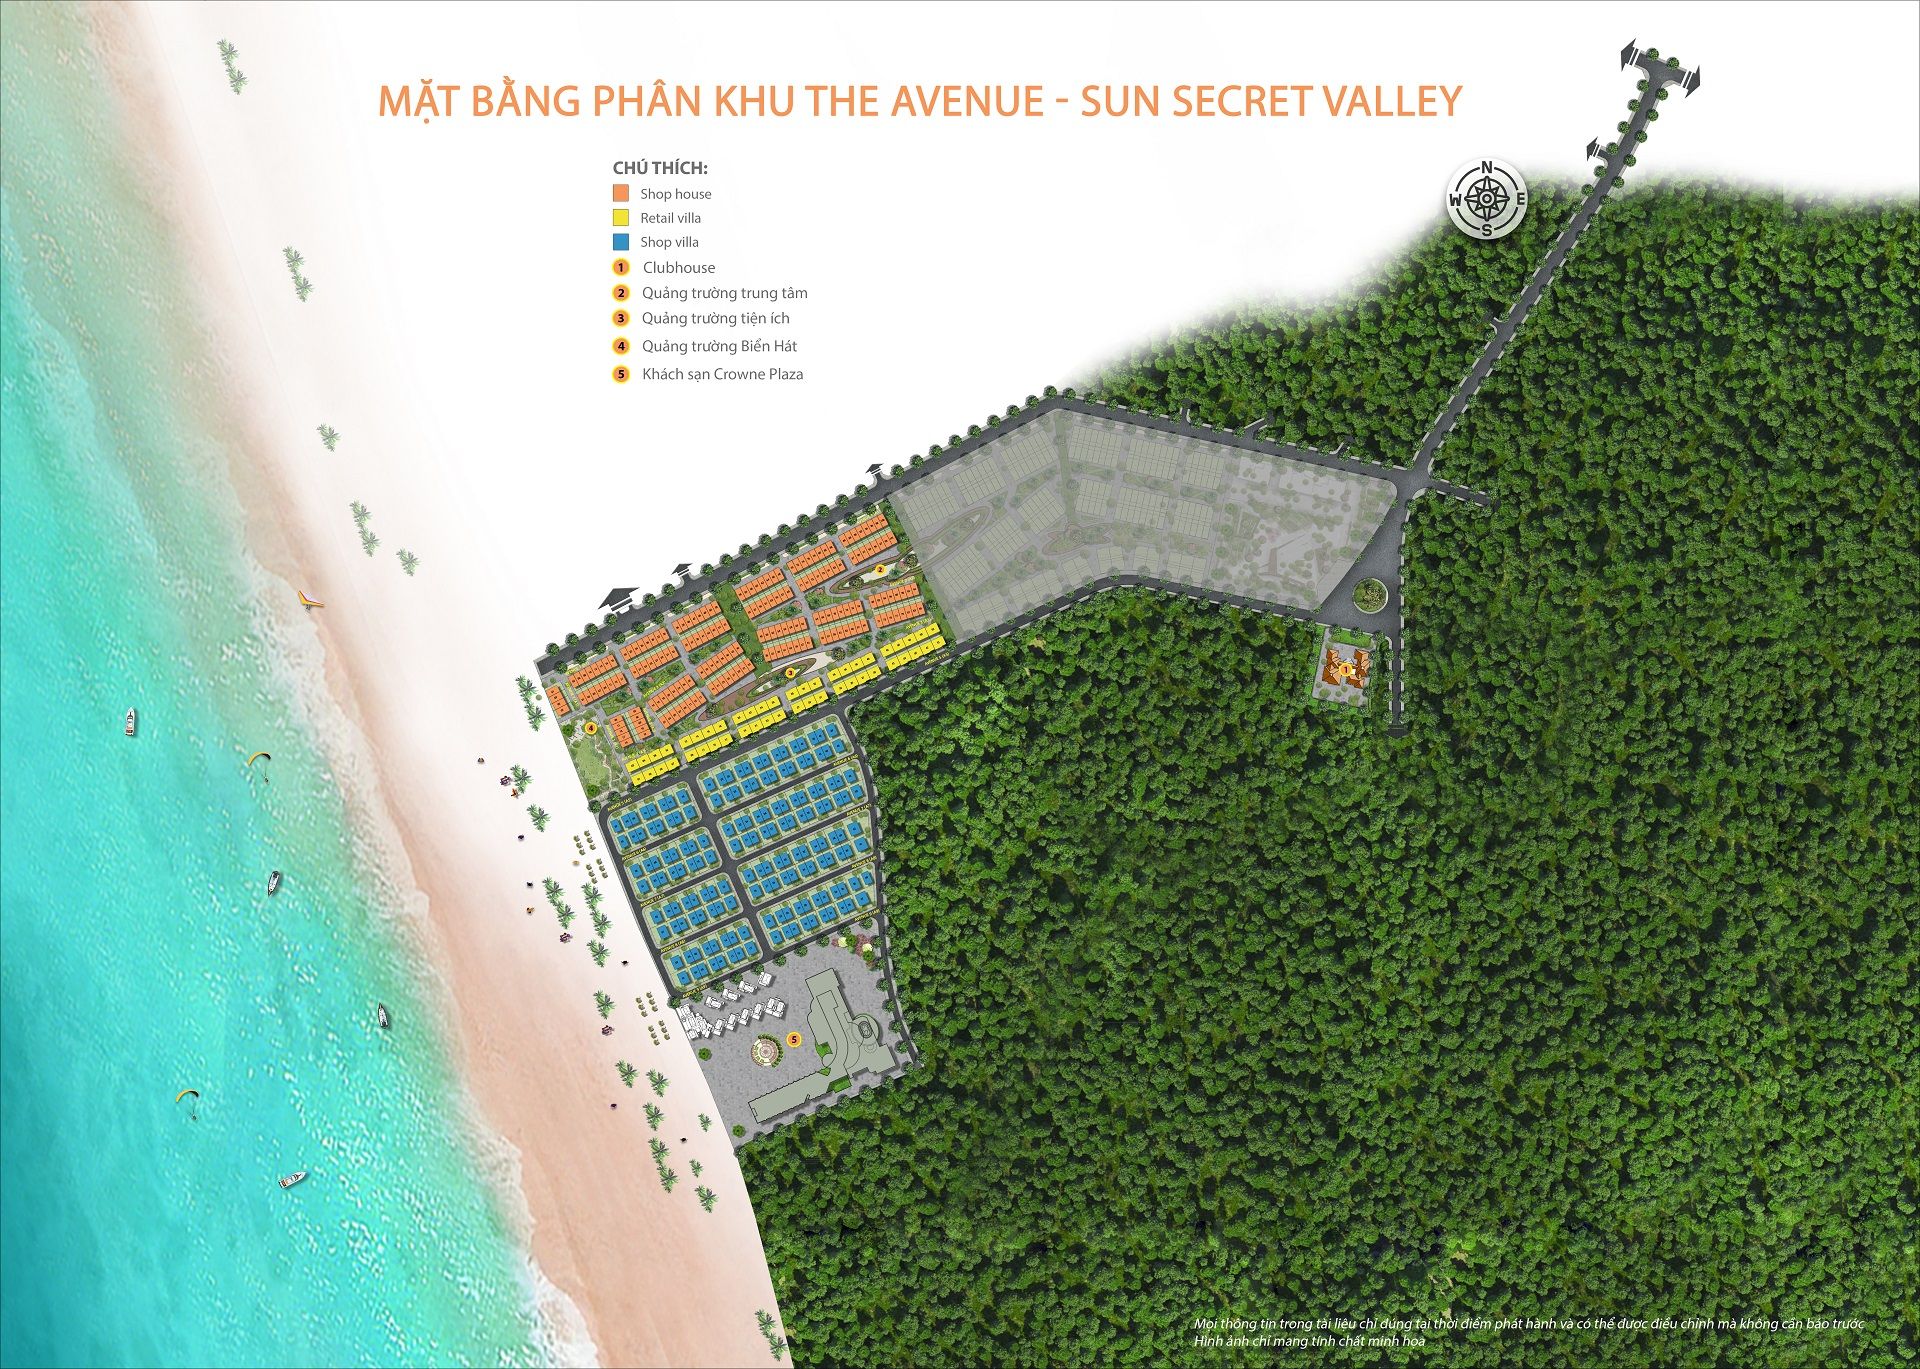 Mặt bằng mới phân khu The Avenue dự án Sun Secret Valley Phú Quốc giai đoạn 1